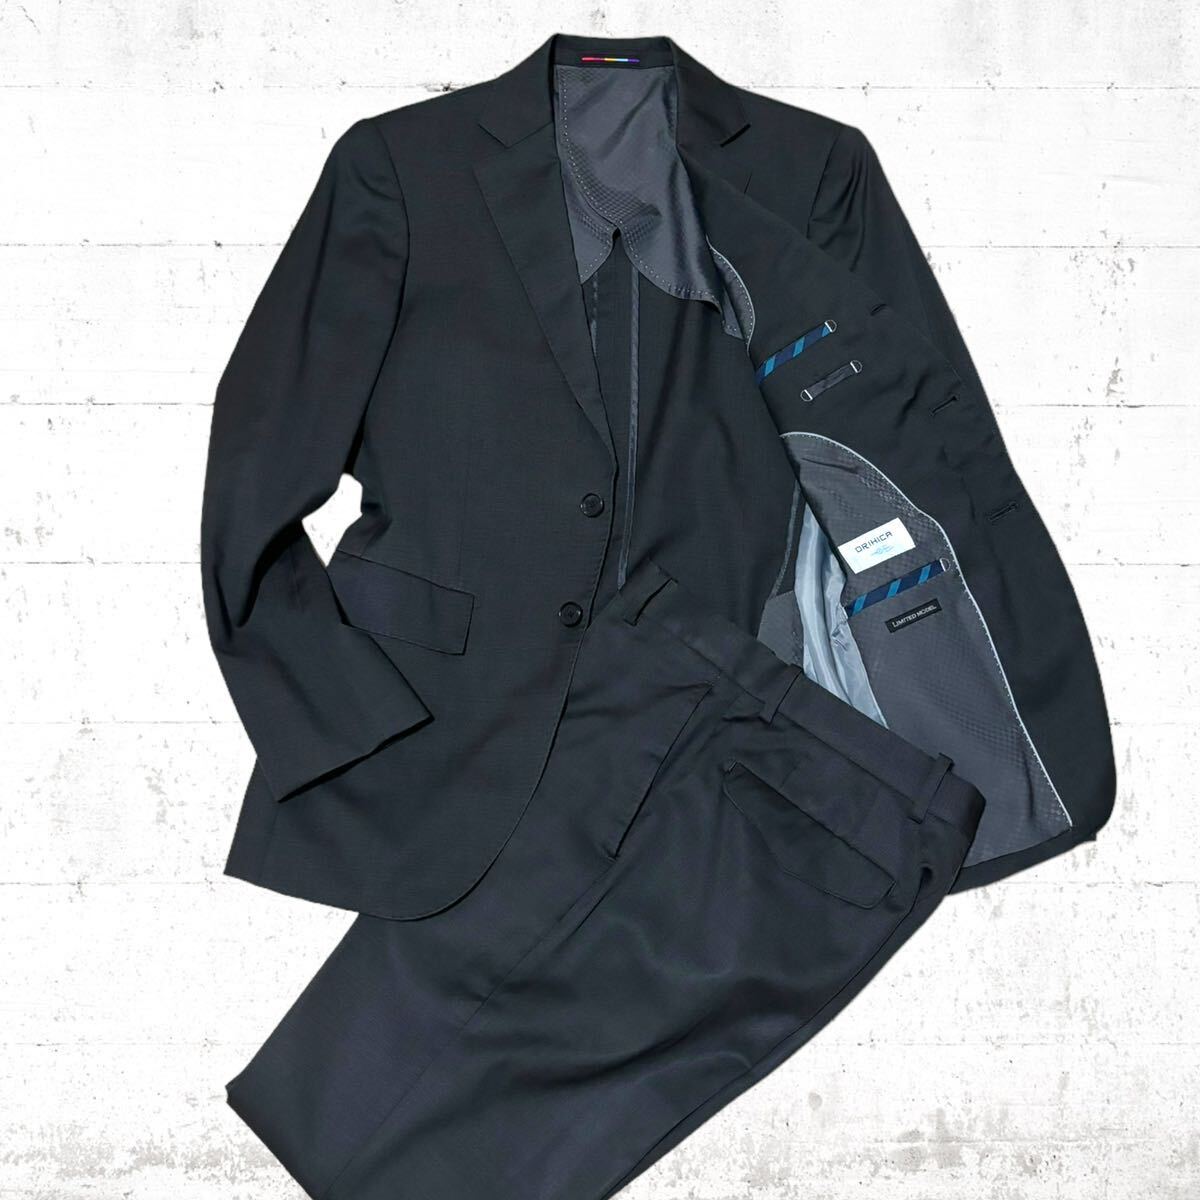 ORIHICA REDA スーツ セットアップ 上下 黒色 ブラック S サイズ 限定 165 2b 3b オリヒカ レダ ダークブラウンジャケット パンツの画像1